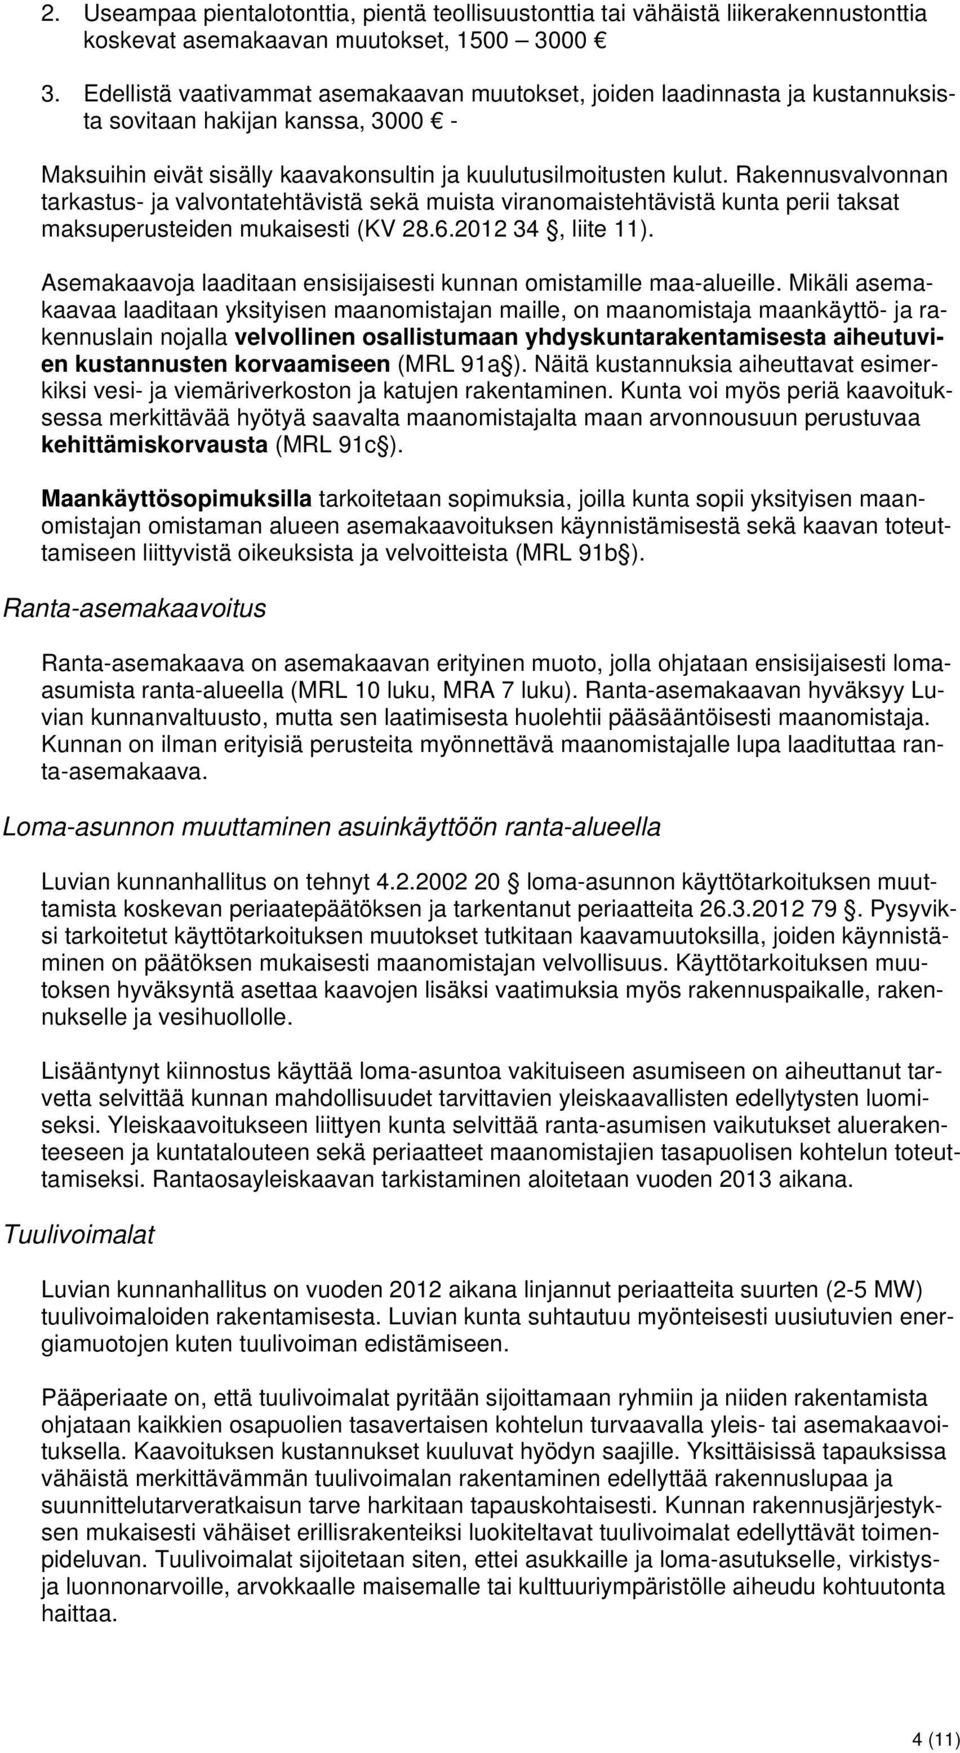 Rakennusvalvonnan tarkastus- ja valvontatehtävistä sekä muista viranomaistehtävistä kunta perii taksat maksuperusteiden mukaisesti (KV 28.6.2012 34, liite 11).